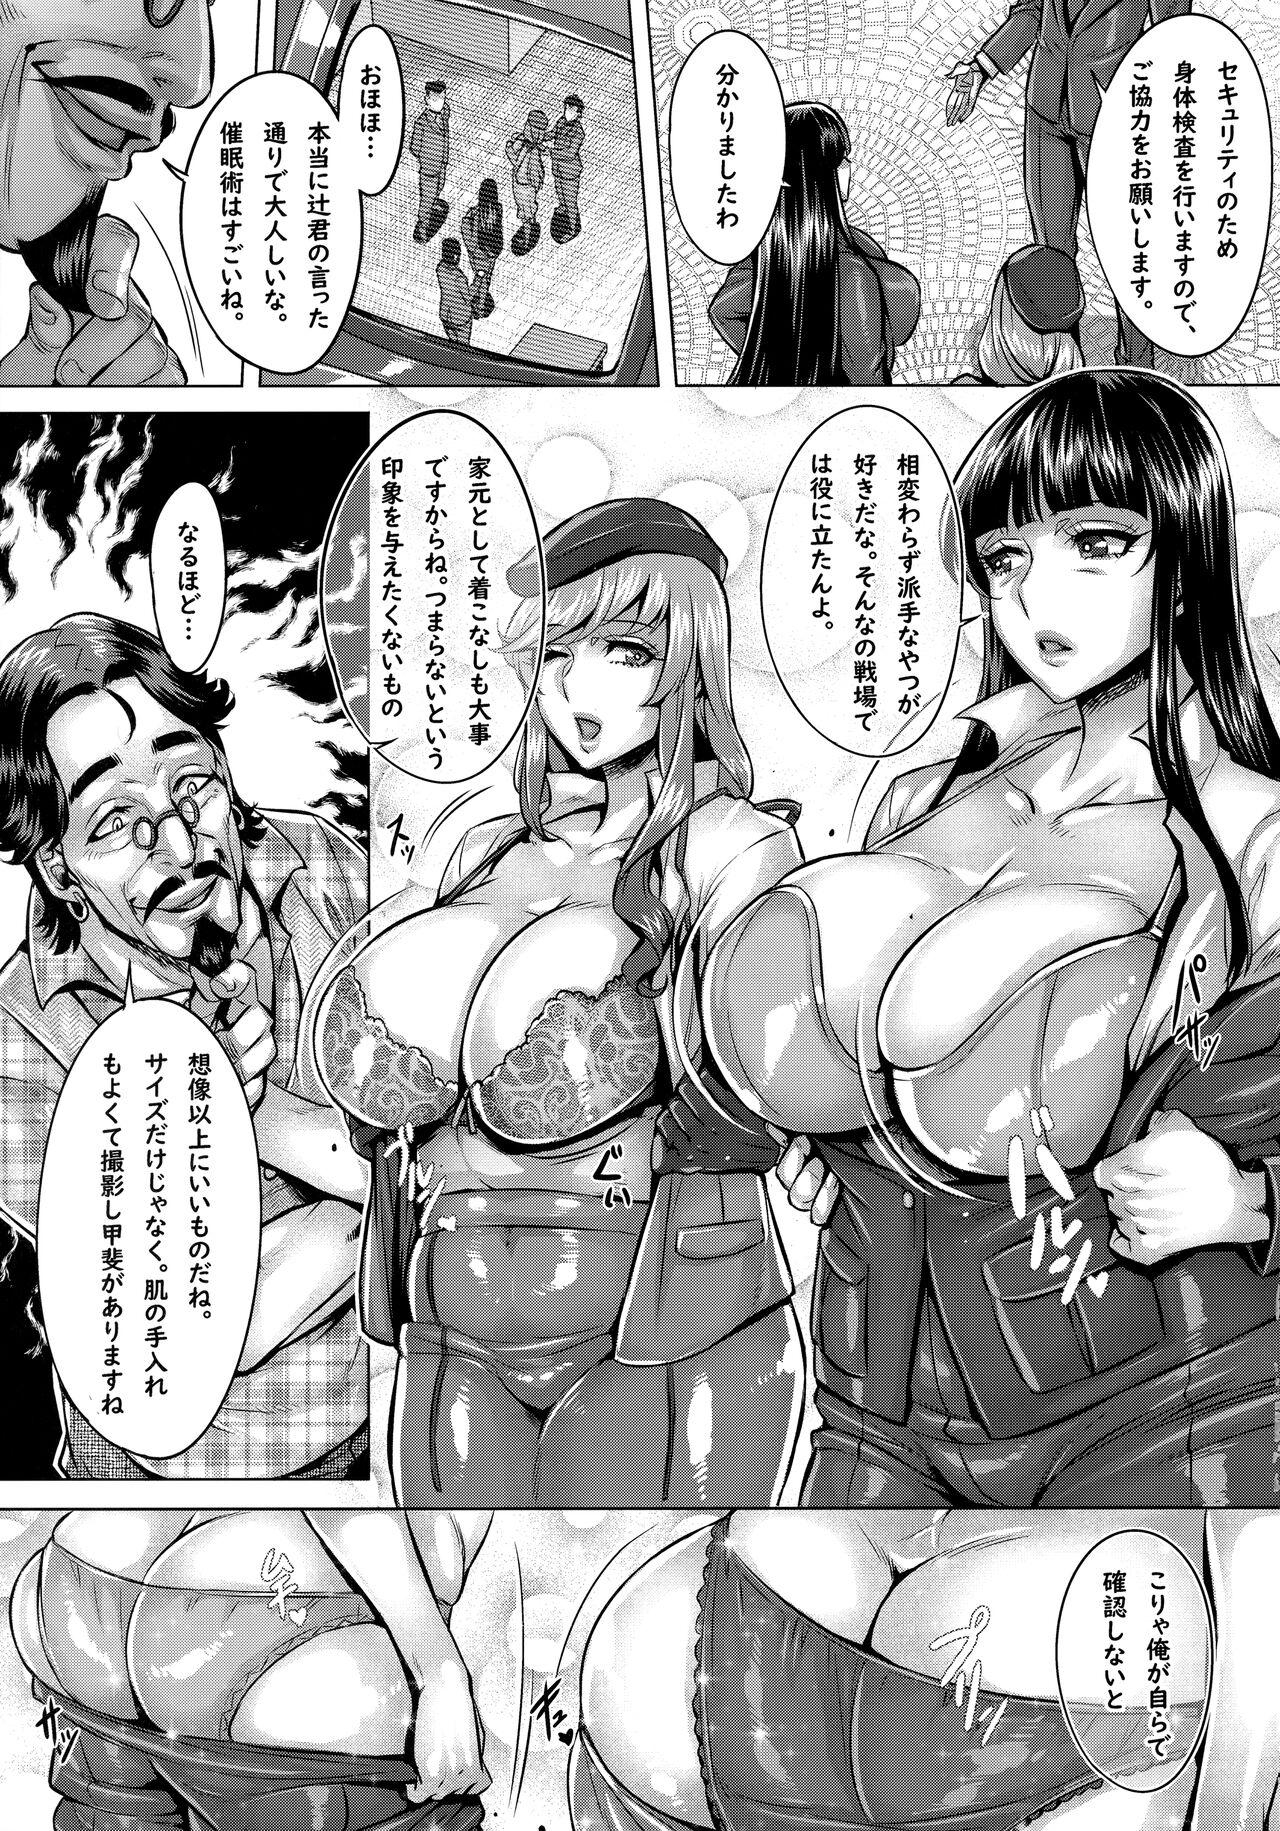 Leaked Sennou Sareta Iemoto-tachi no Zenra Inniku Satsueikai - Girls und panzer Real Amateurs - Page 4